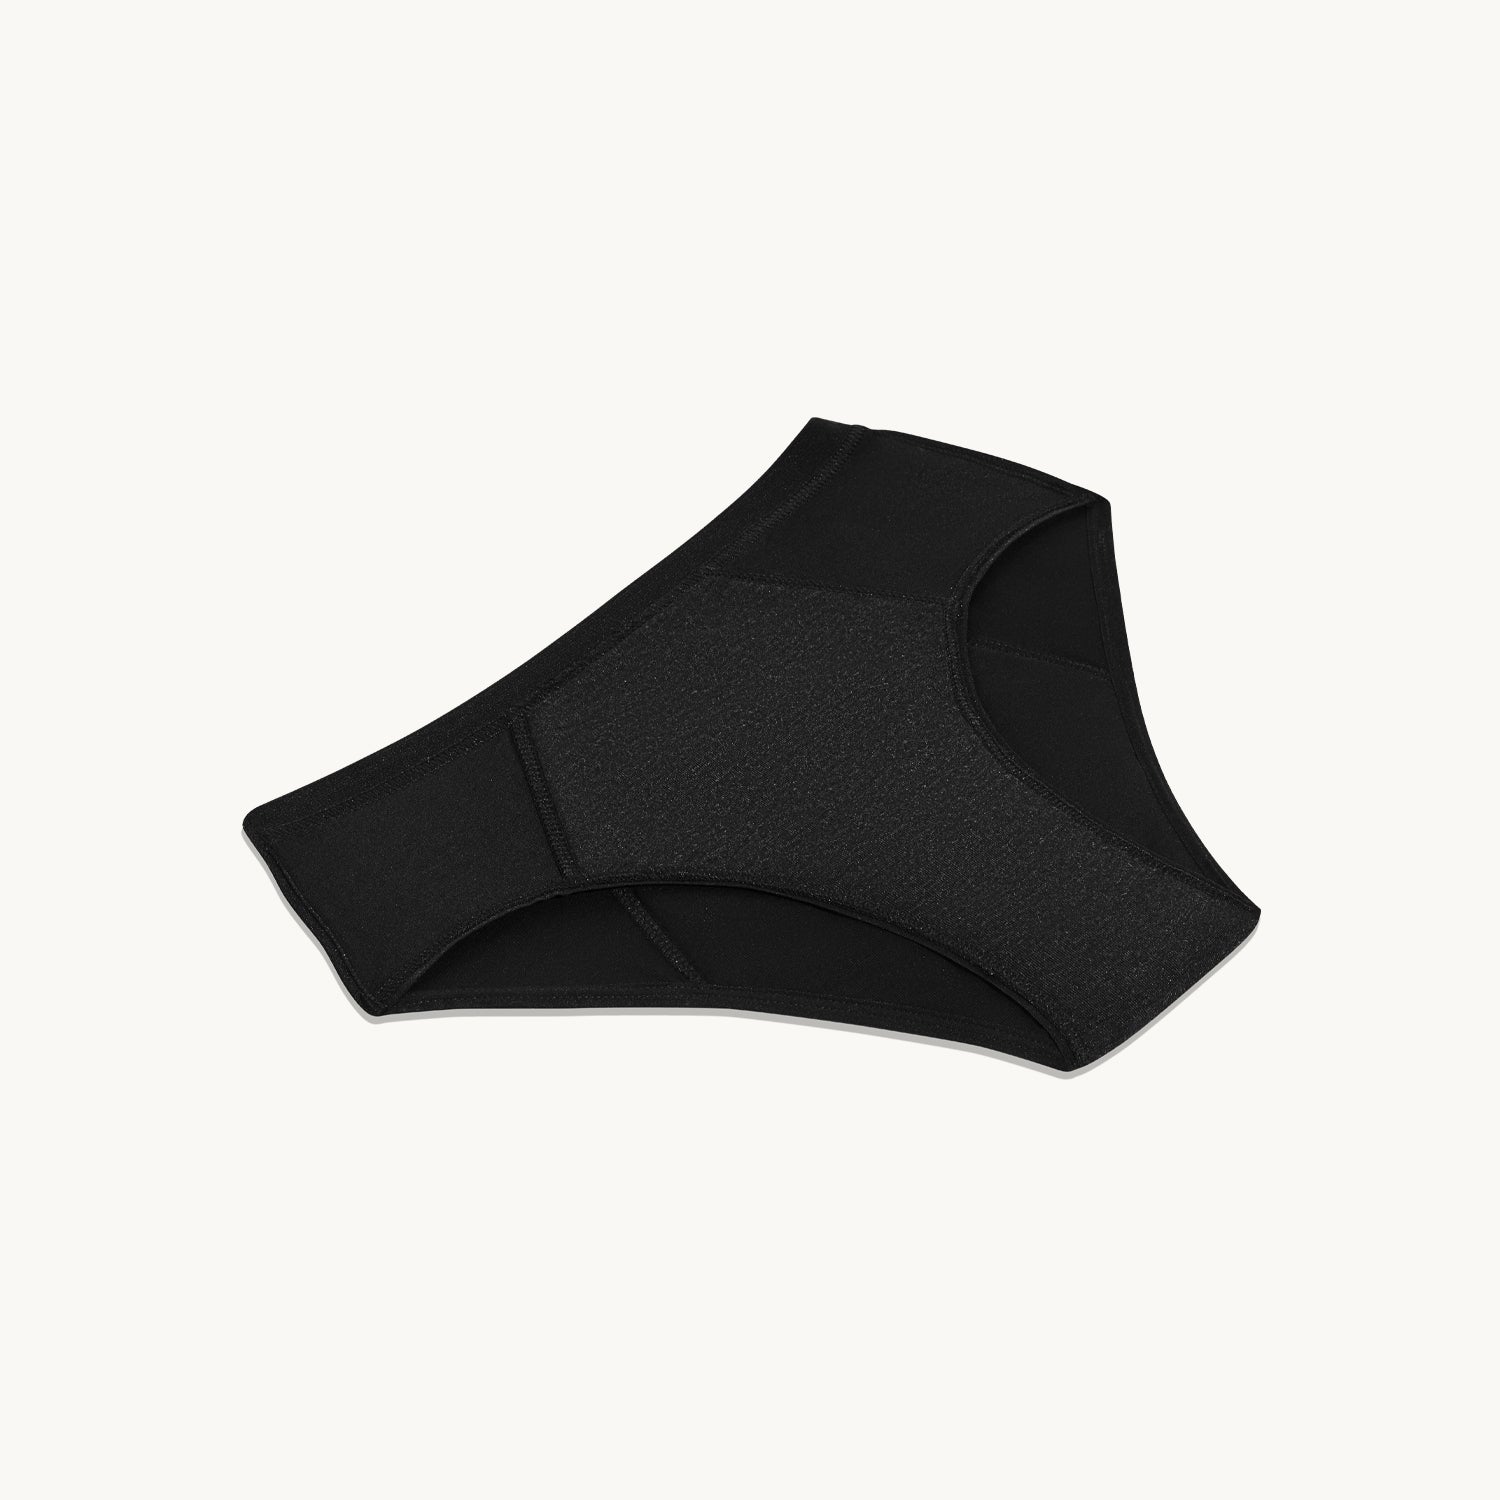 Teen Cotton Modal Super Leakproof Underwear Bikini - Leakproof